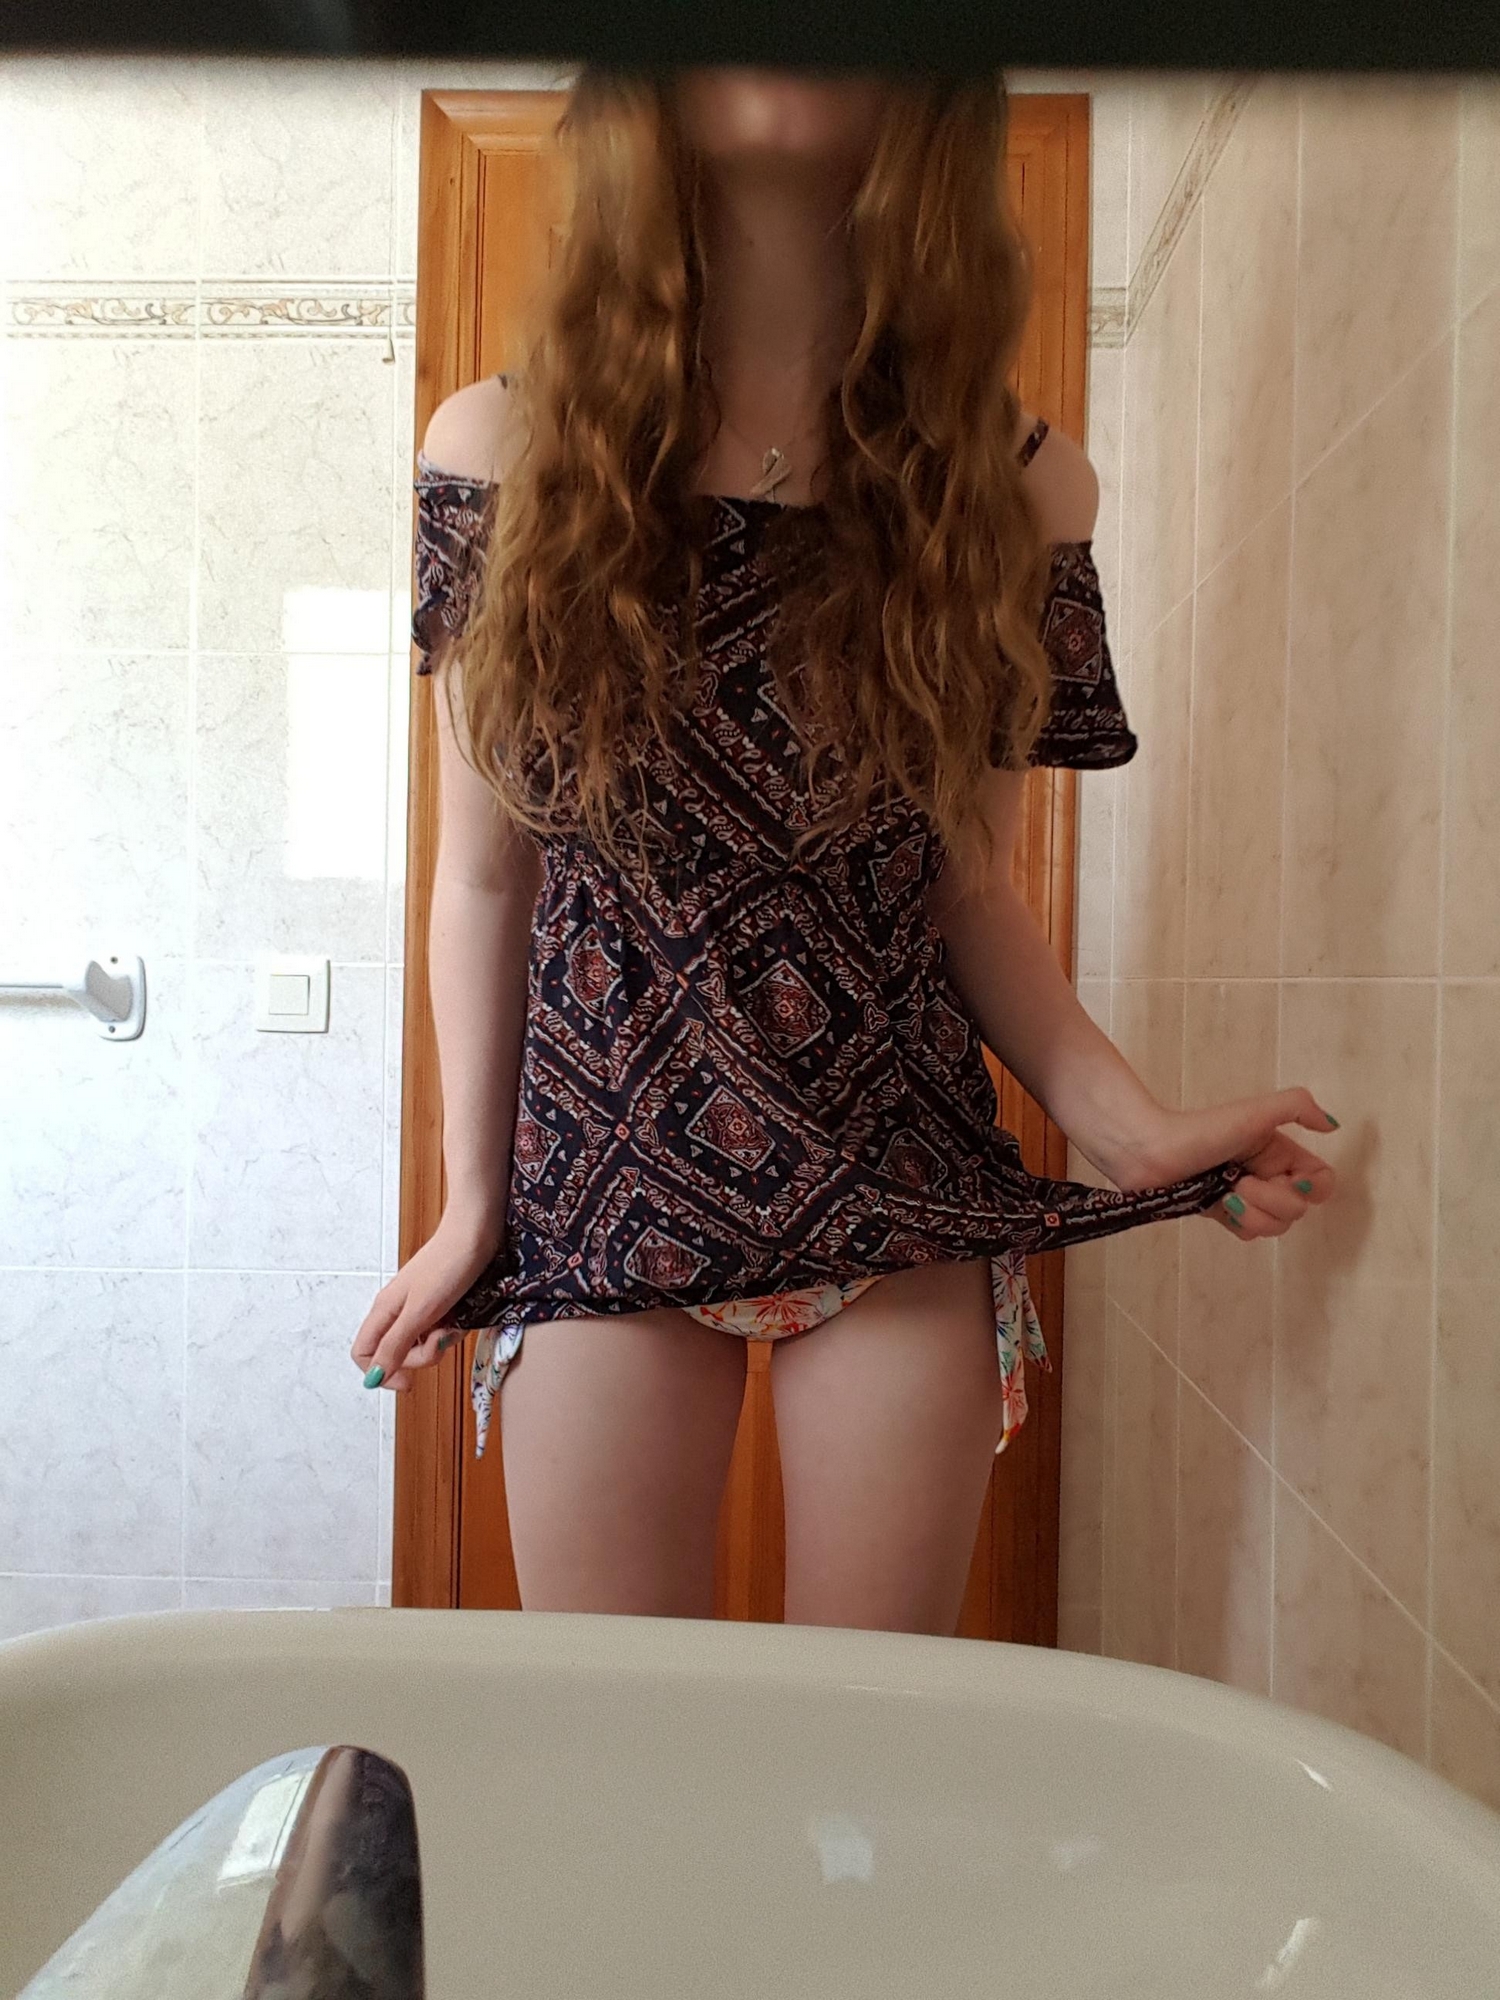 Фигуристая студентка сняла купальник в ванной перед зеркалом 9 фотография